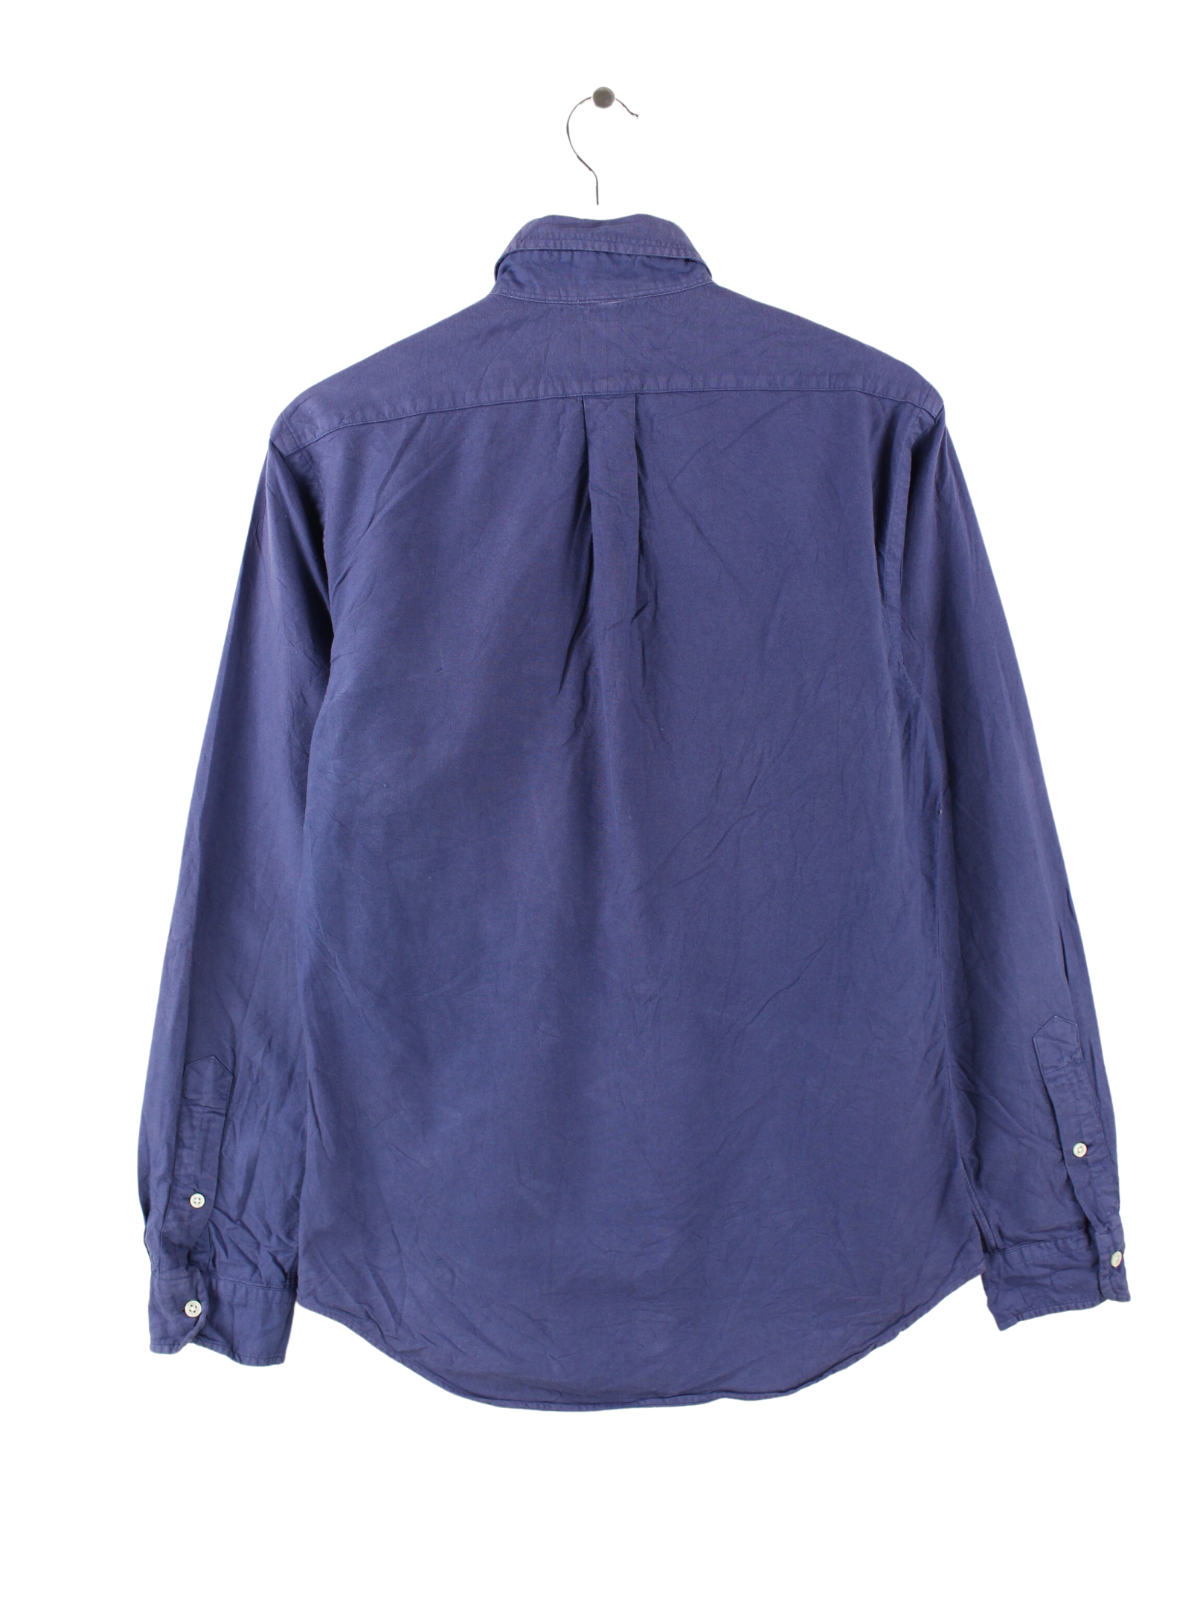 Ralph Lauren Shirt Blue S